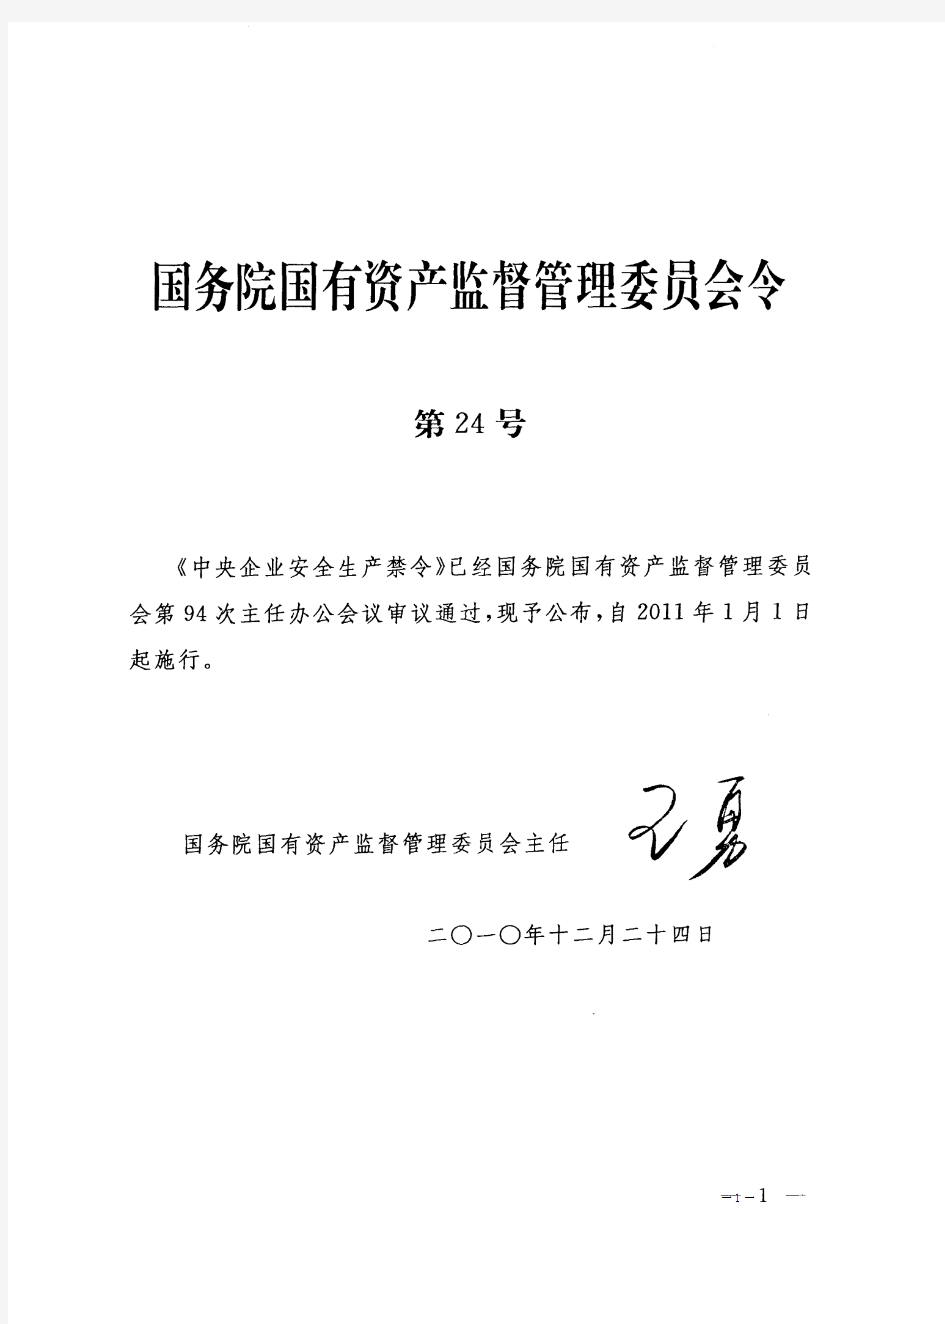 国资委令第24号《中央企业安全生产禁令》